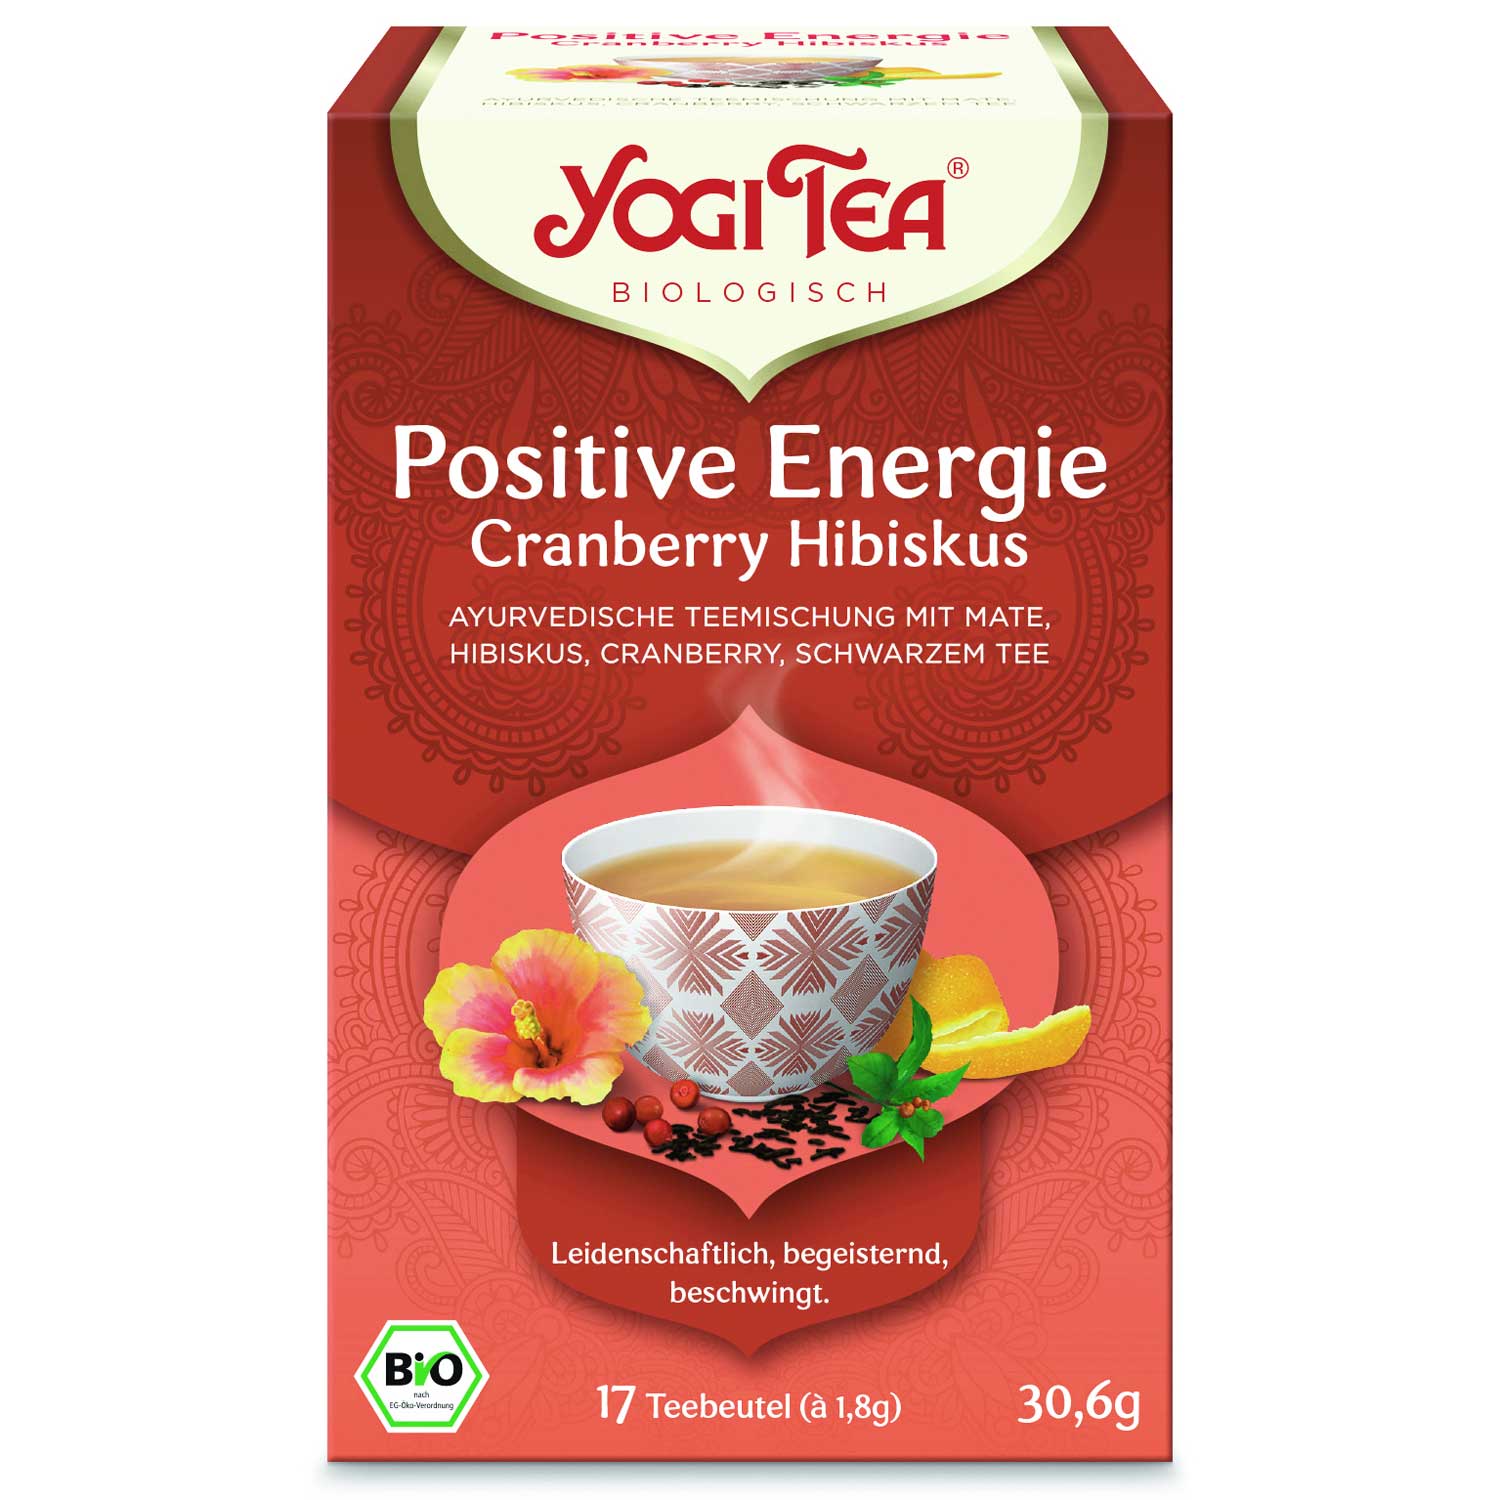 Yogi Tea Yogi čaj Bio Positive Energy brusnica i hibiskus s crnim čajem 17 x 2 g